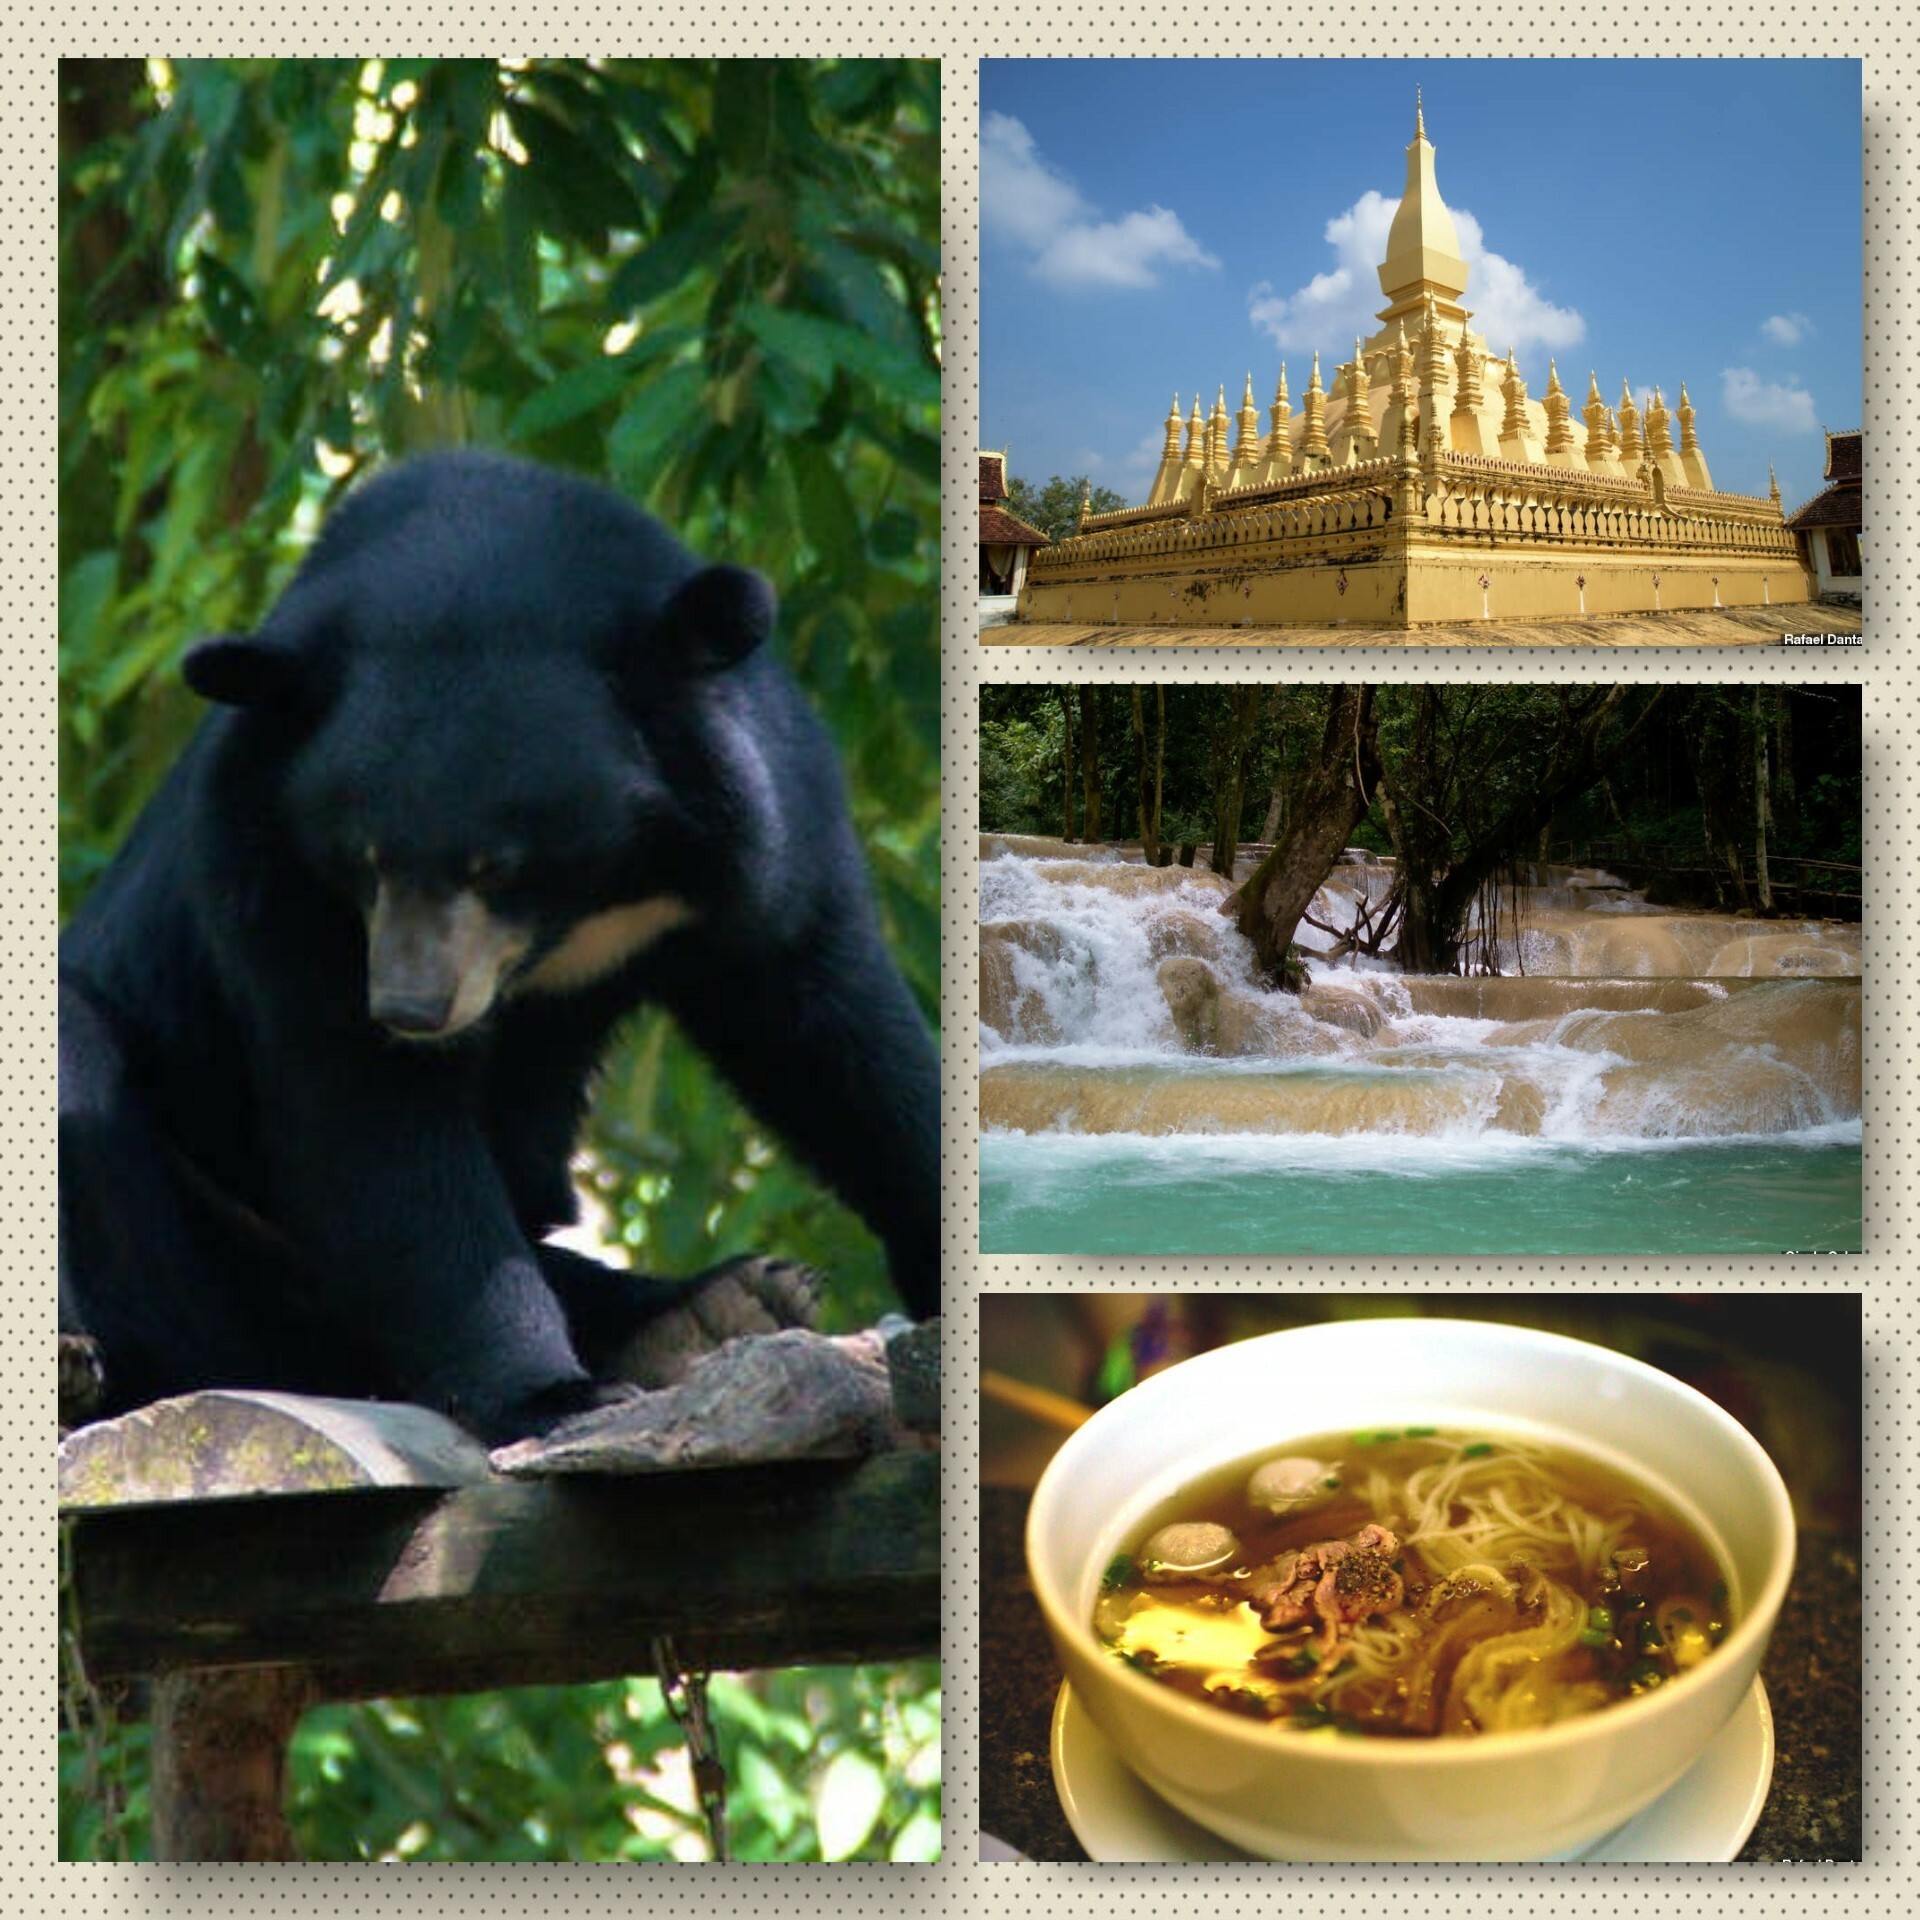 Em sentido horário: urso da organização Free the Bears, o monumento Pha That Luang e a cachoeira Tad Sae, no Laos. Já na última foto, um dos maravilhosos pratos que experimentamos durante a nossa estadia na região